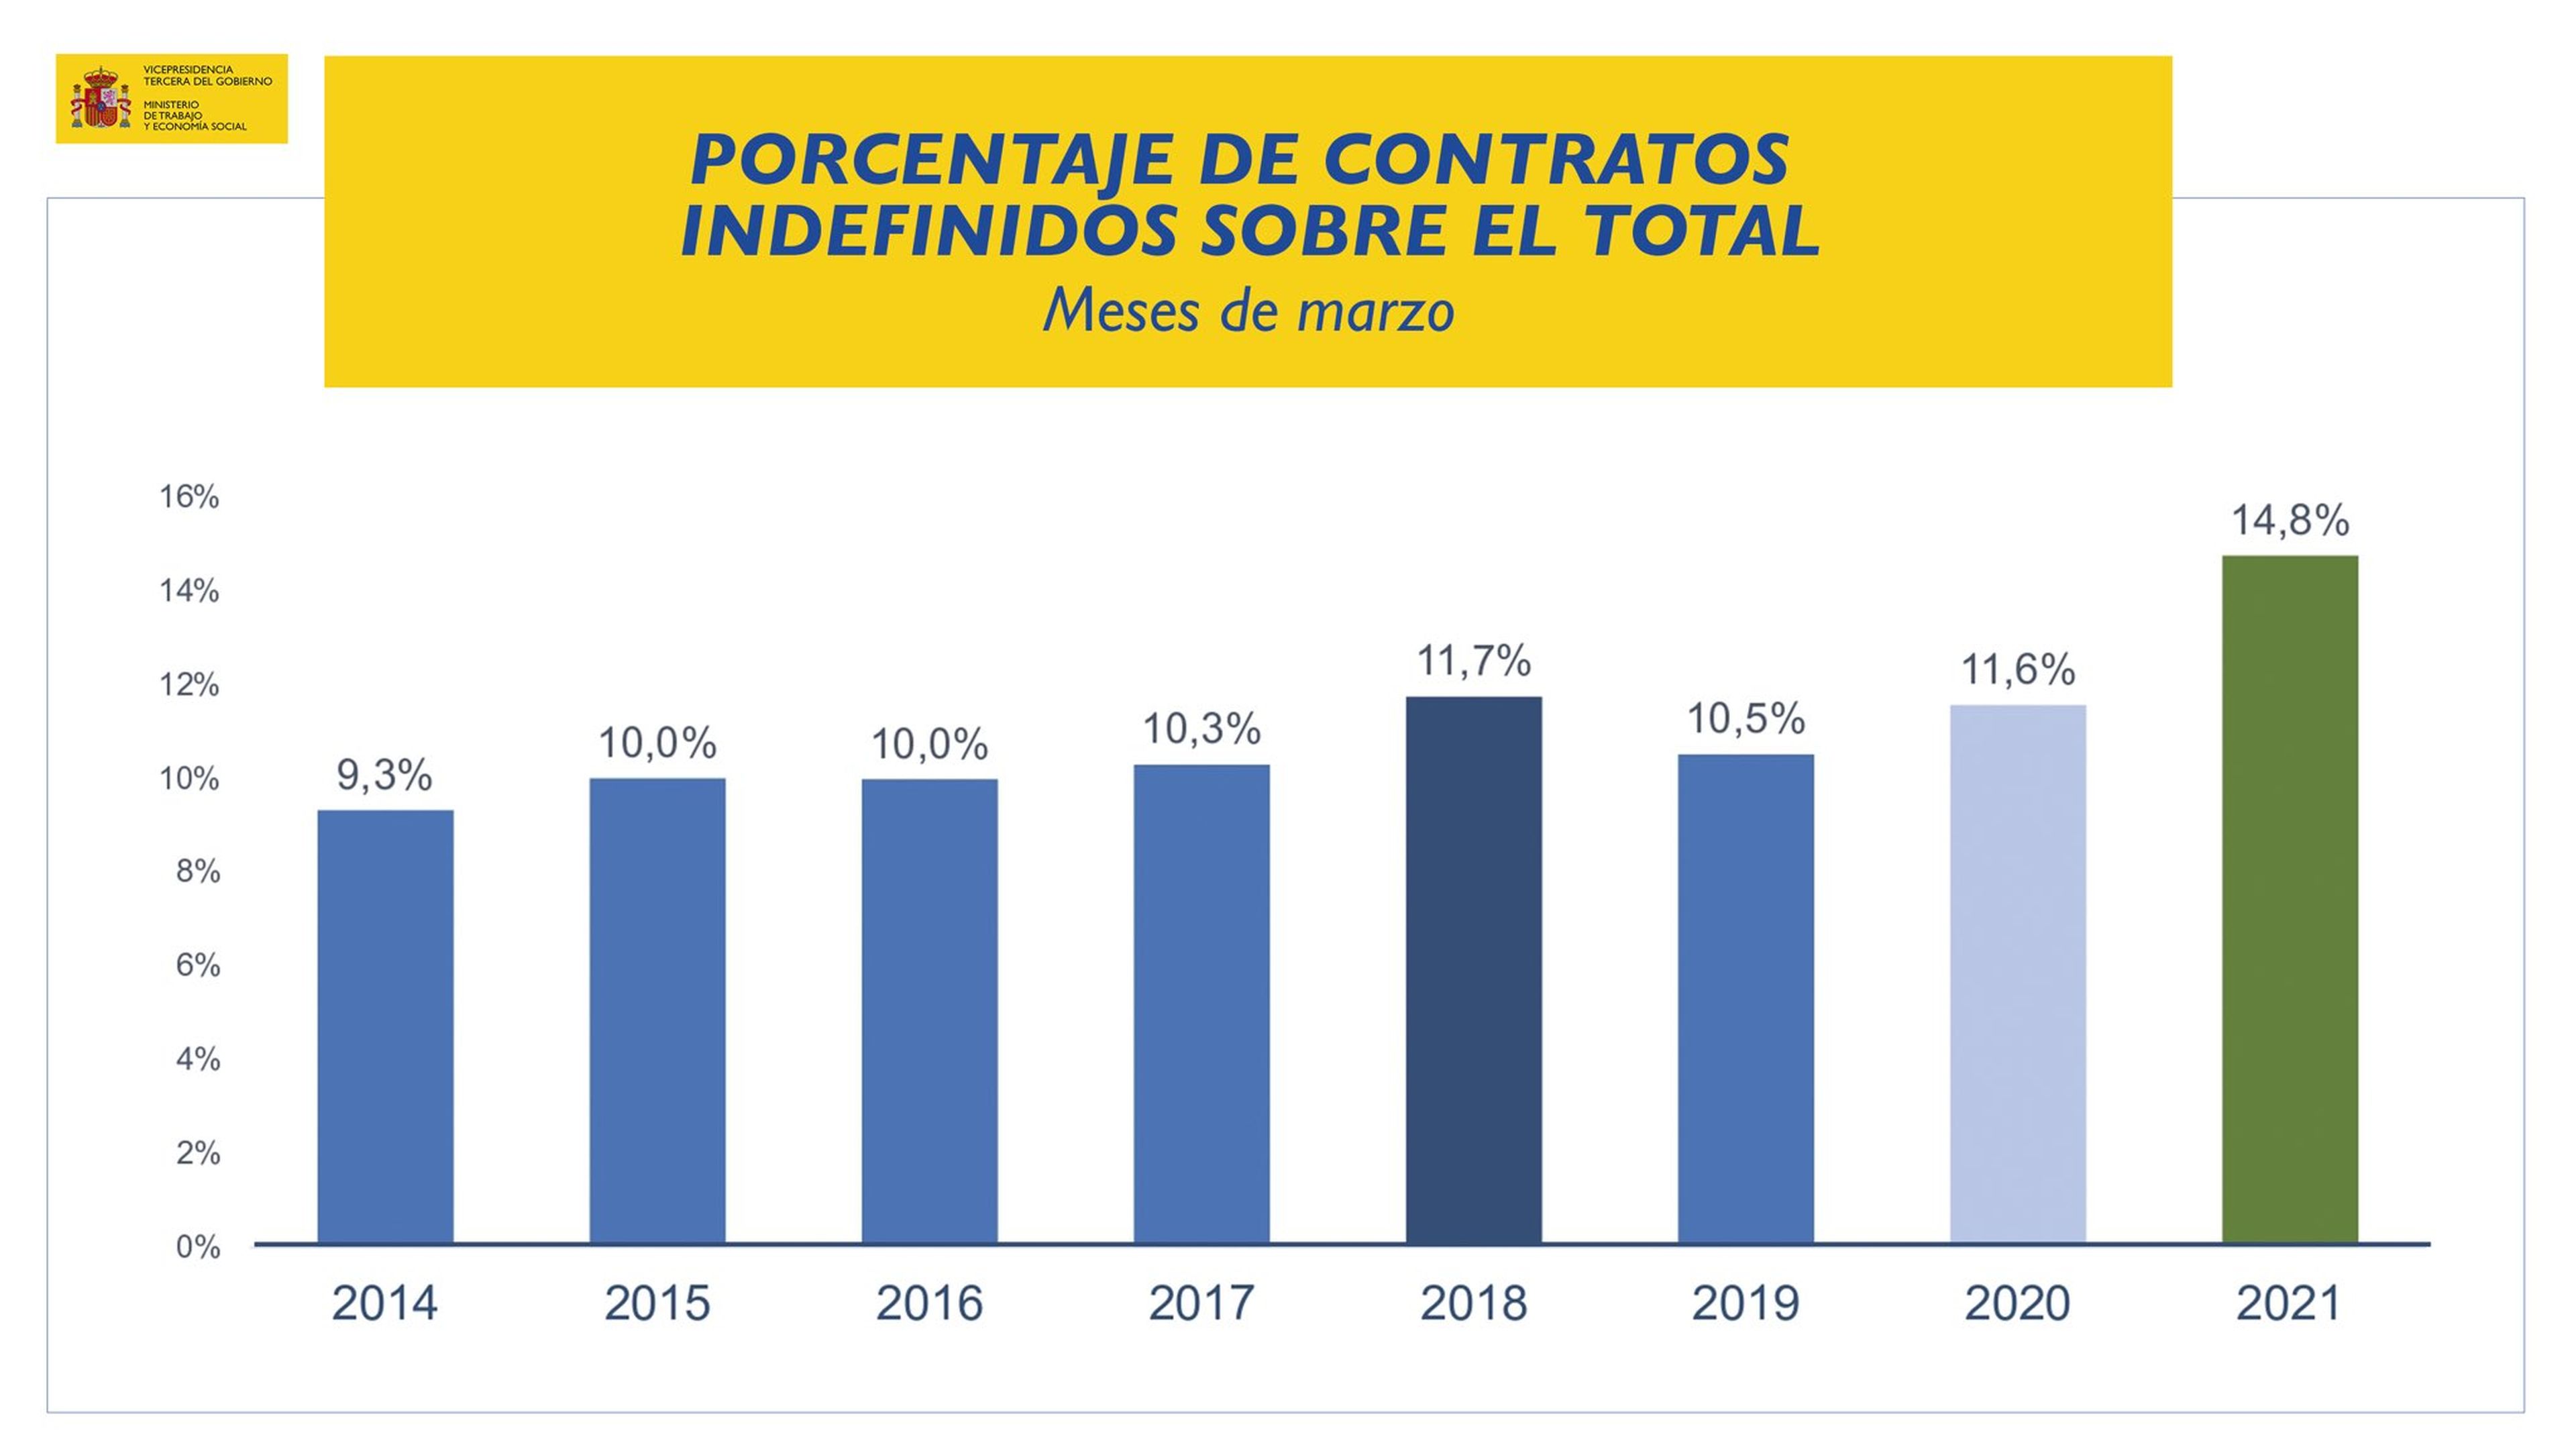 Porcentaje de contratos indefinidos sobre el total en marzo de 2021 y los años anteriores